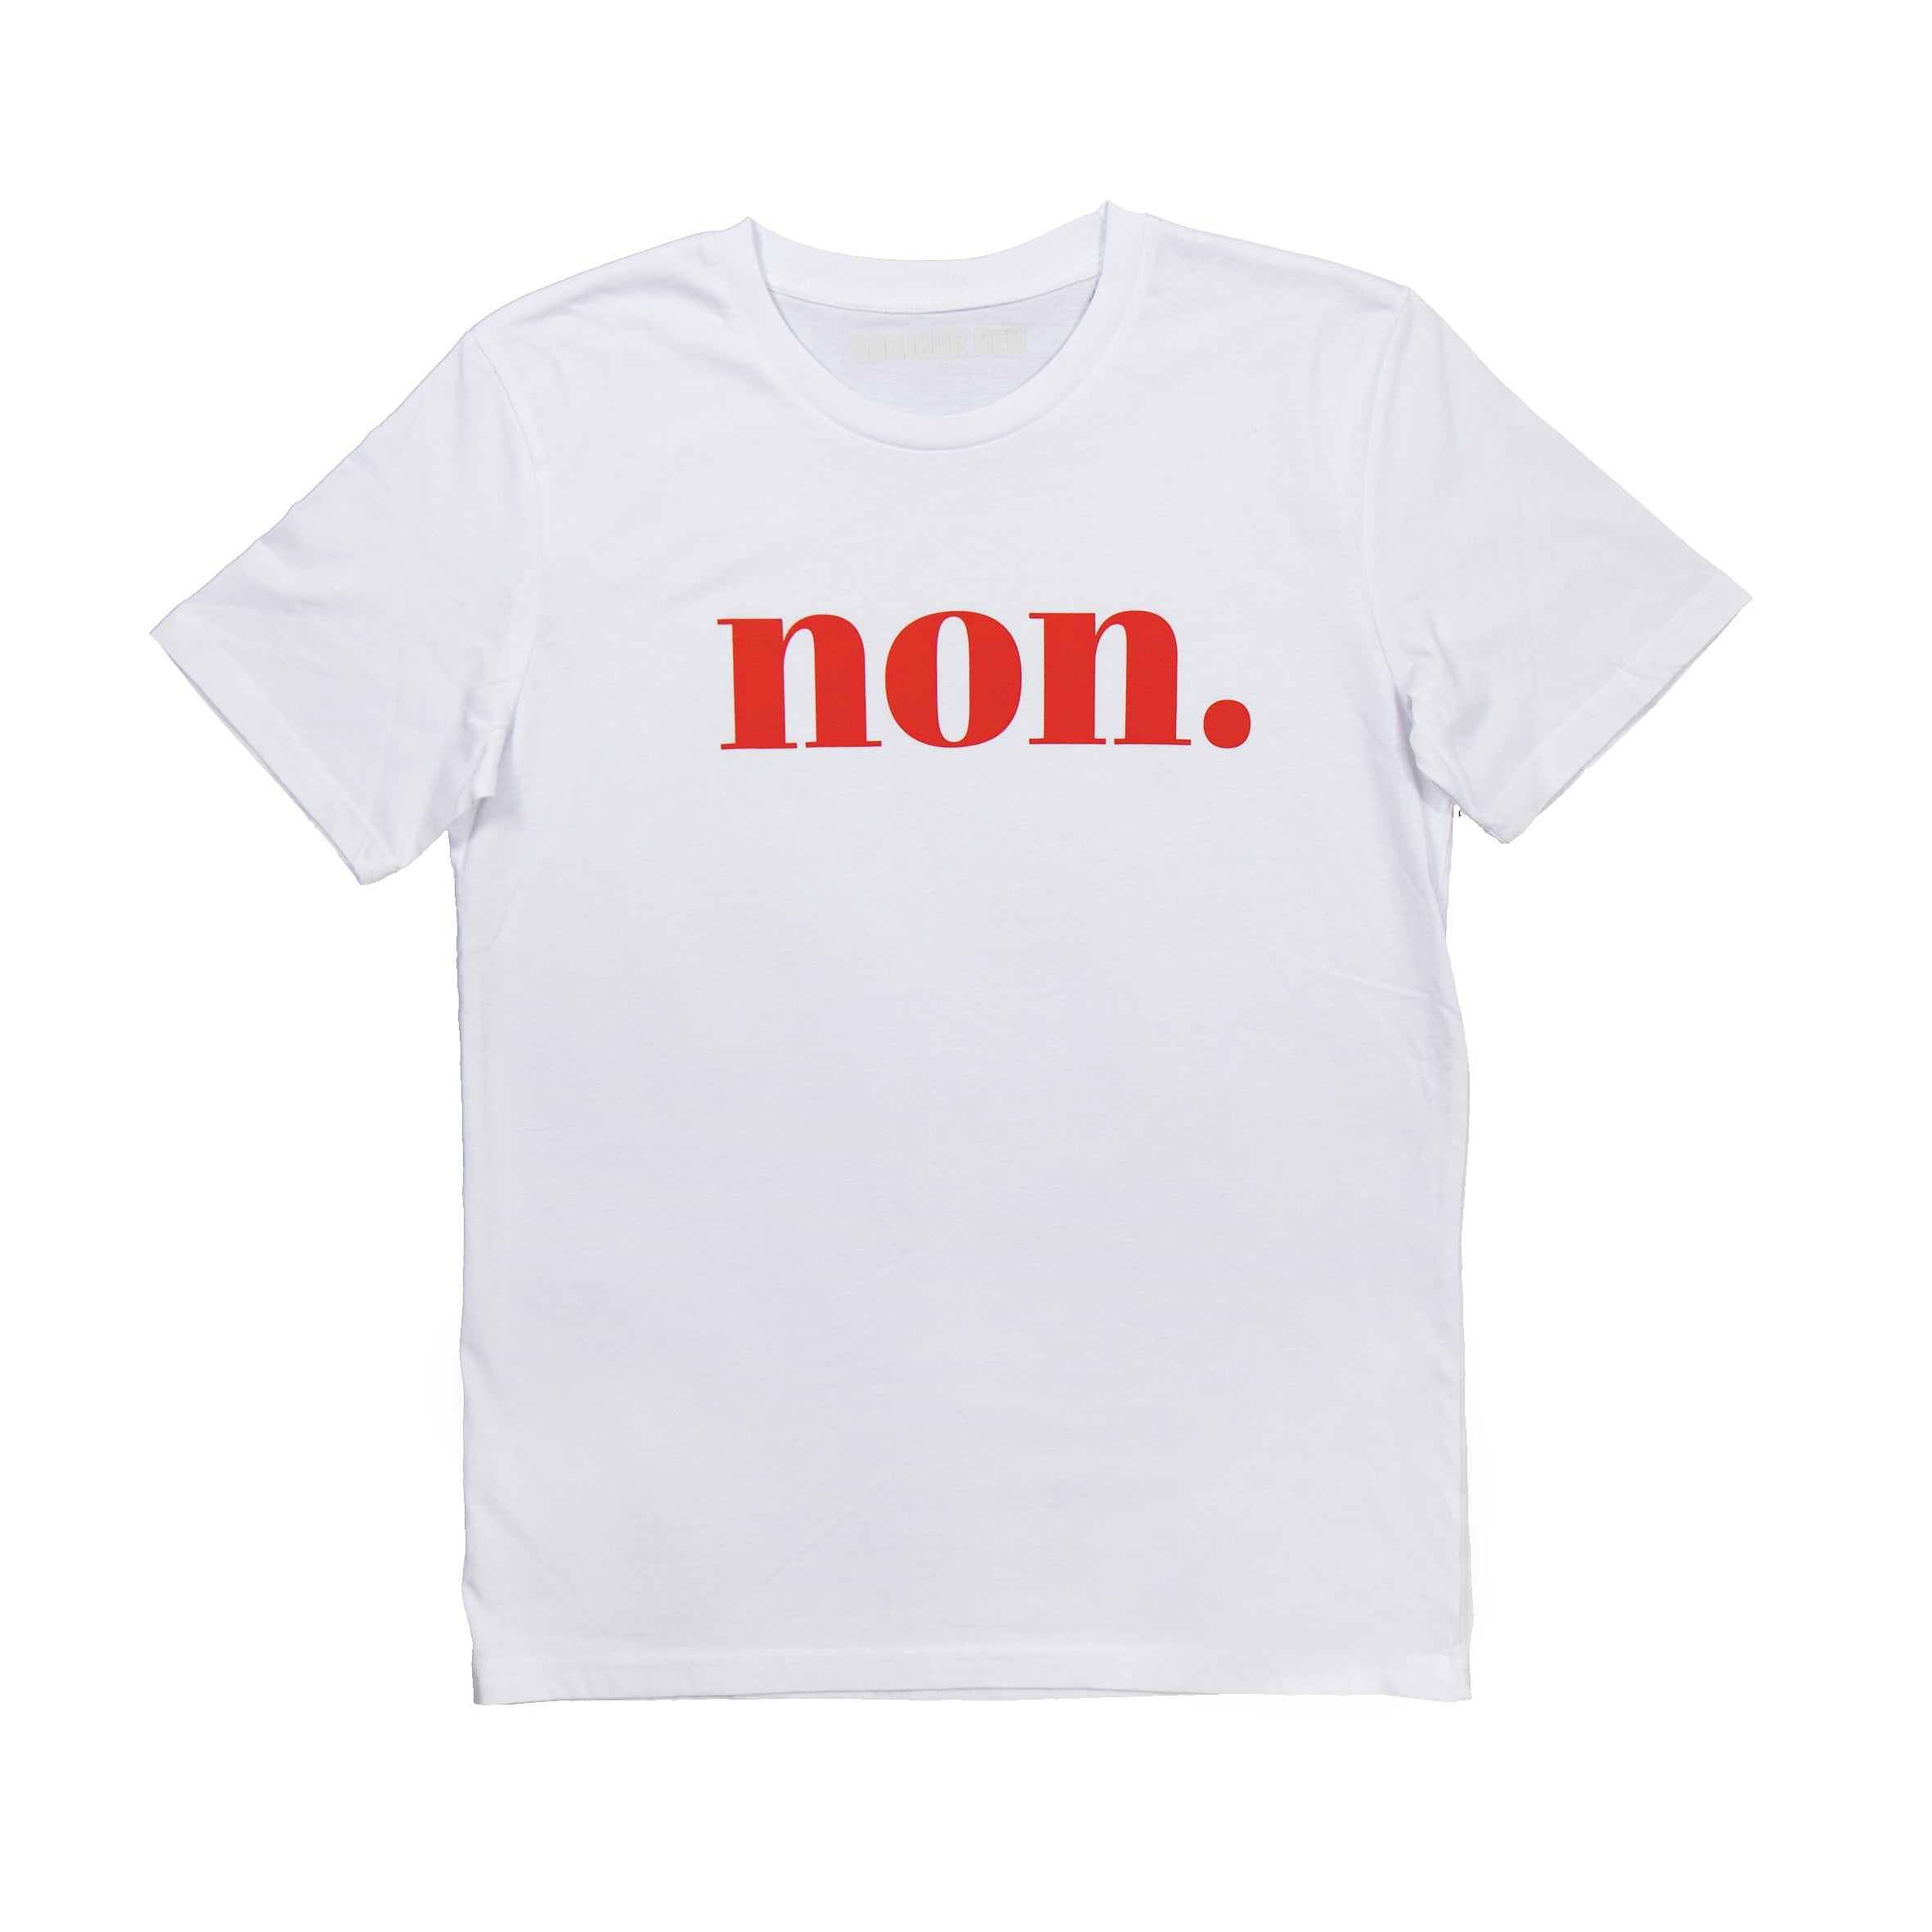 Non. T-Shirt - Ben Bonjour Weiß/Rot –